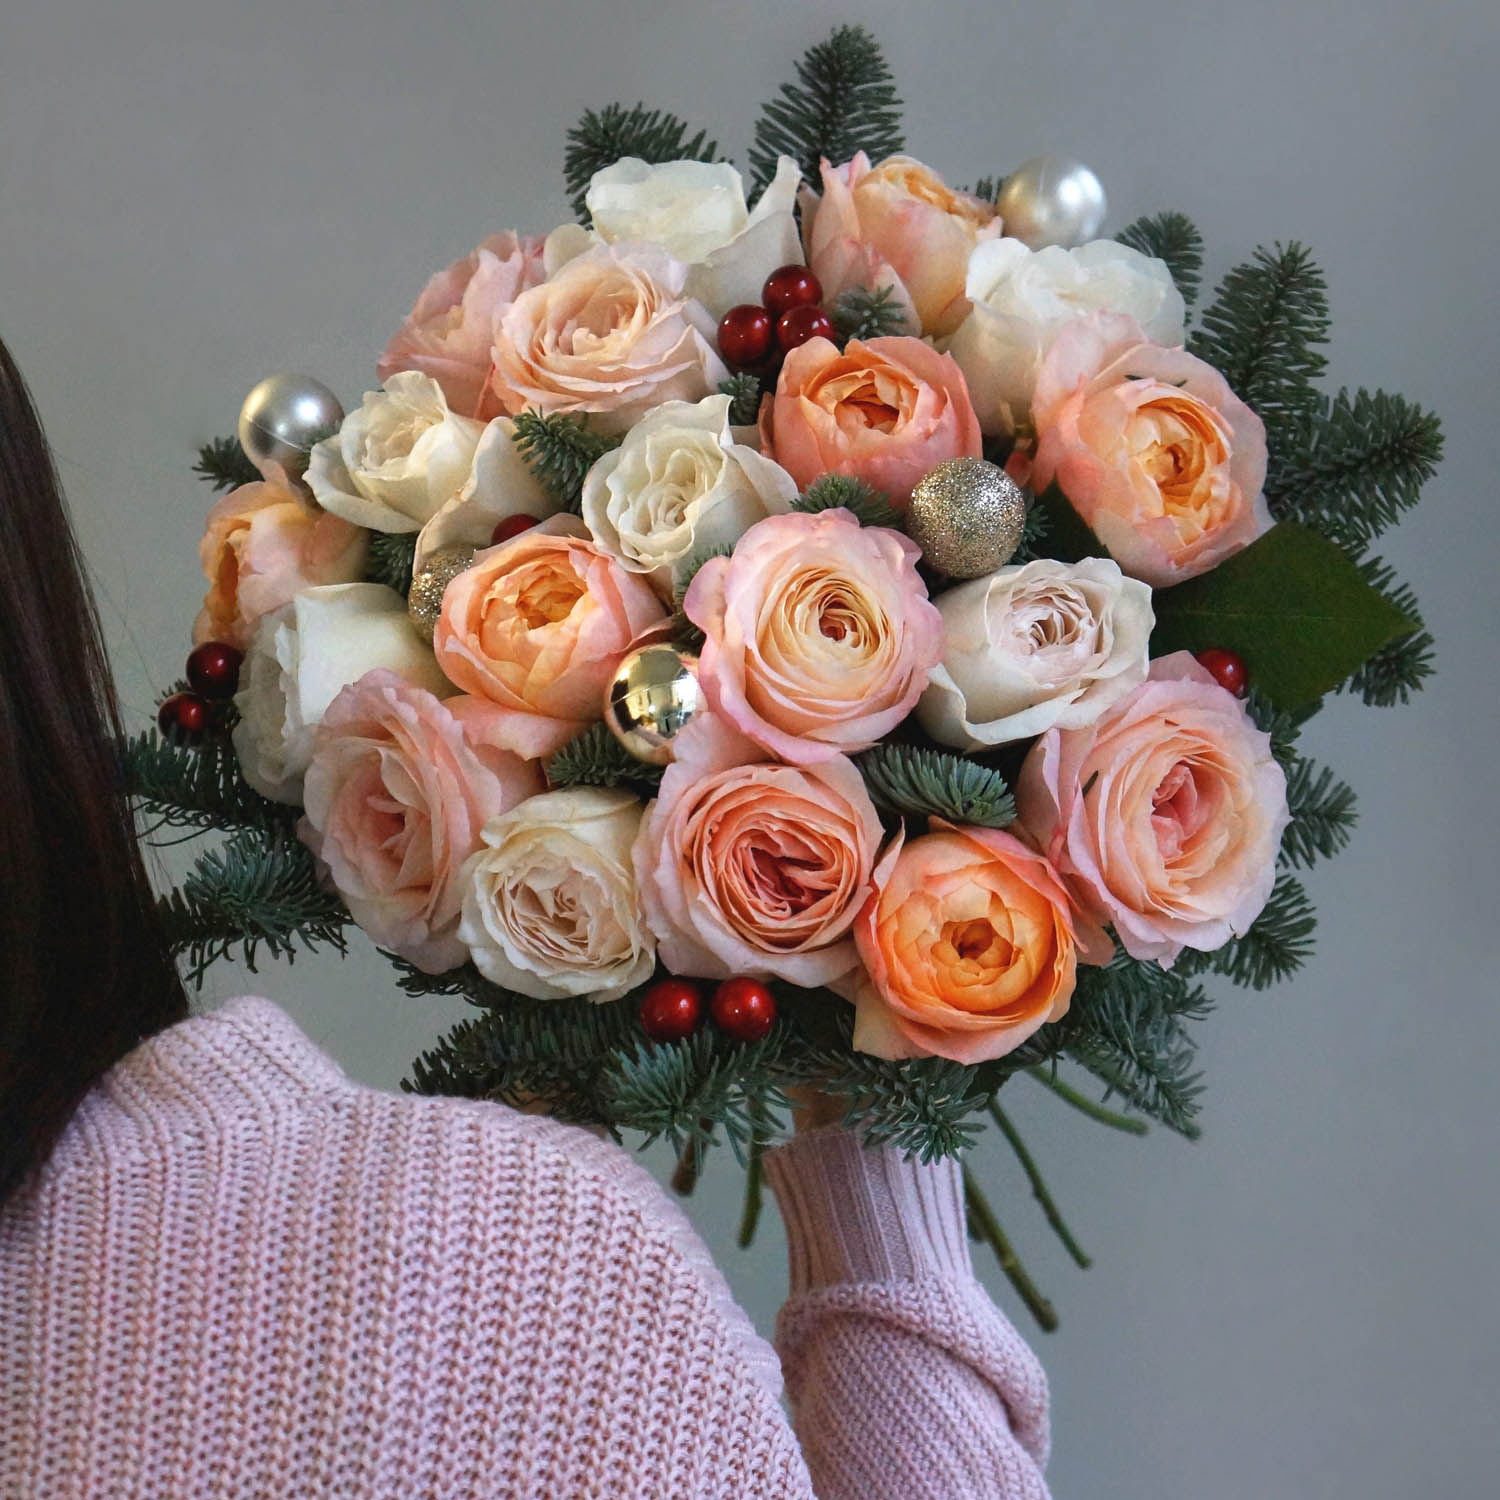 новогодний букет из персиковых и бежих роз с нобилисом и новогодним декором